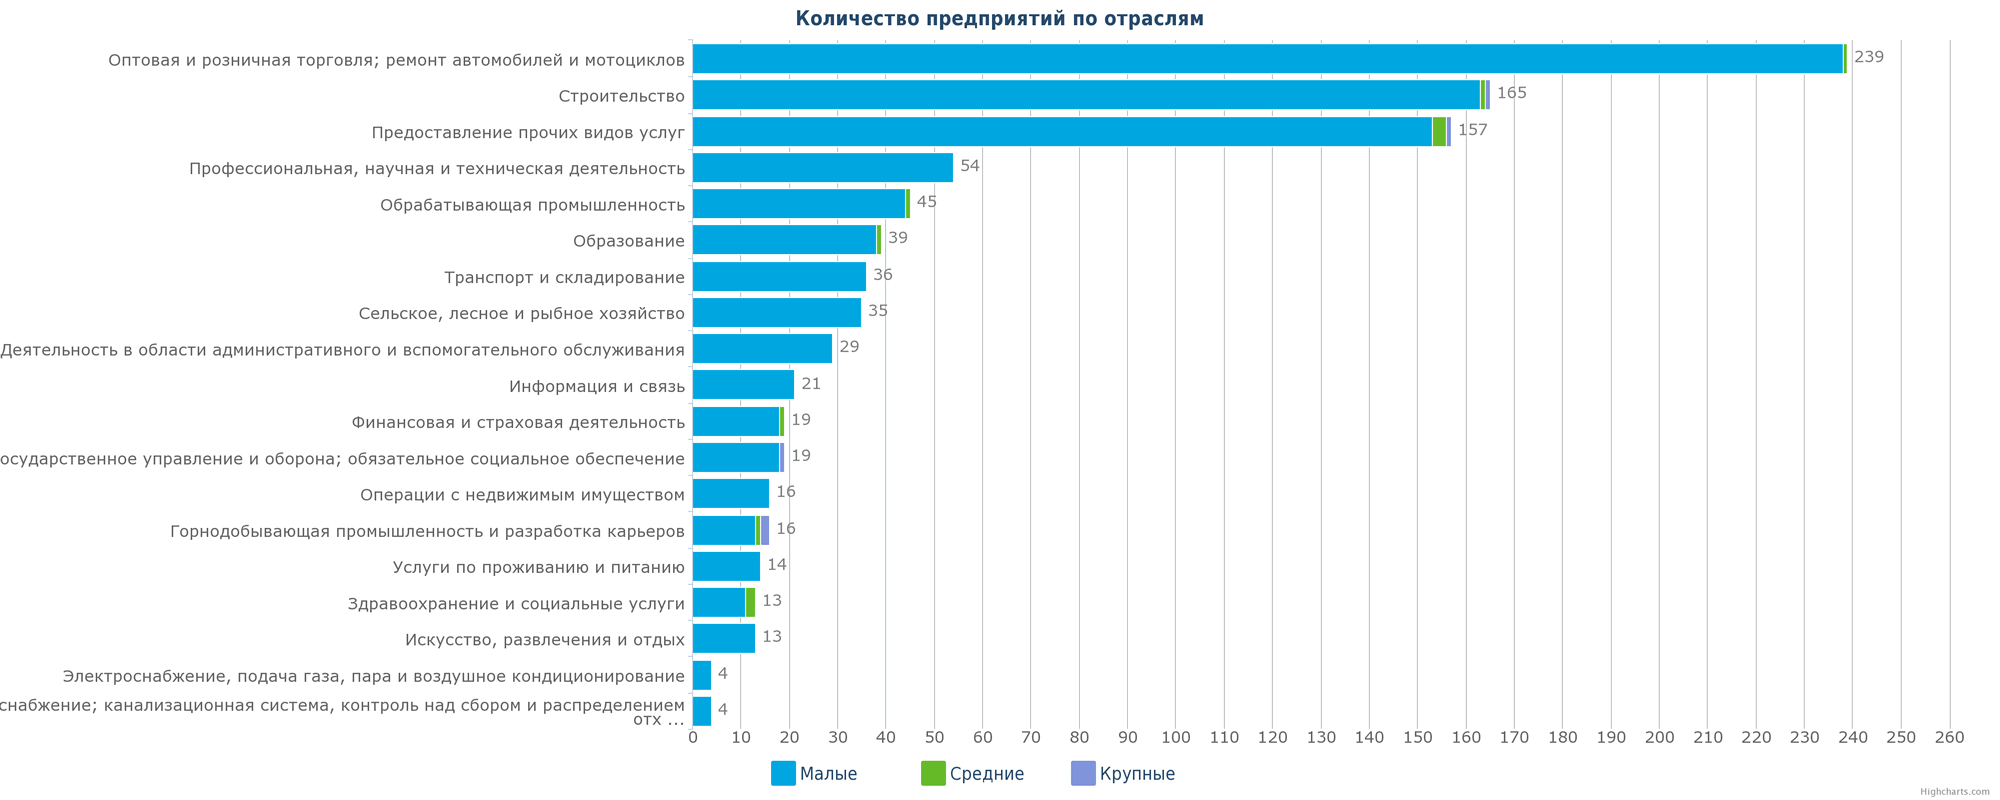 Количество новых зарегистрированных предприятий в Казахстане по отраслям